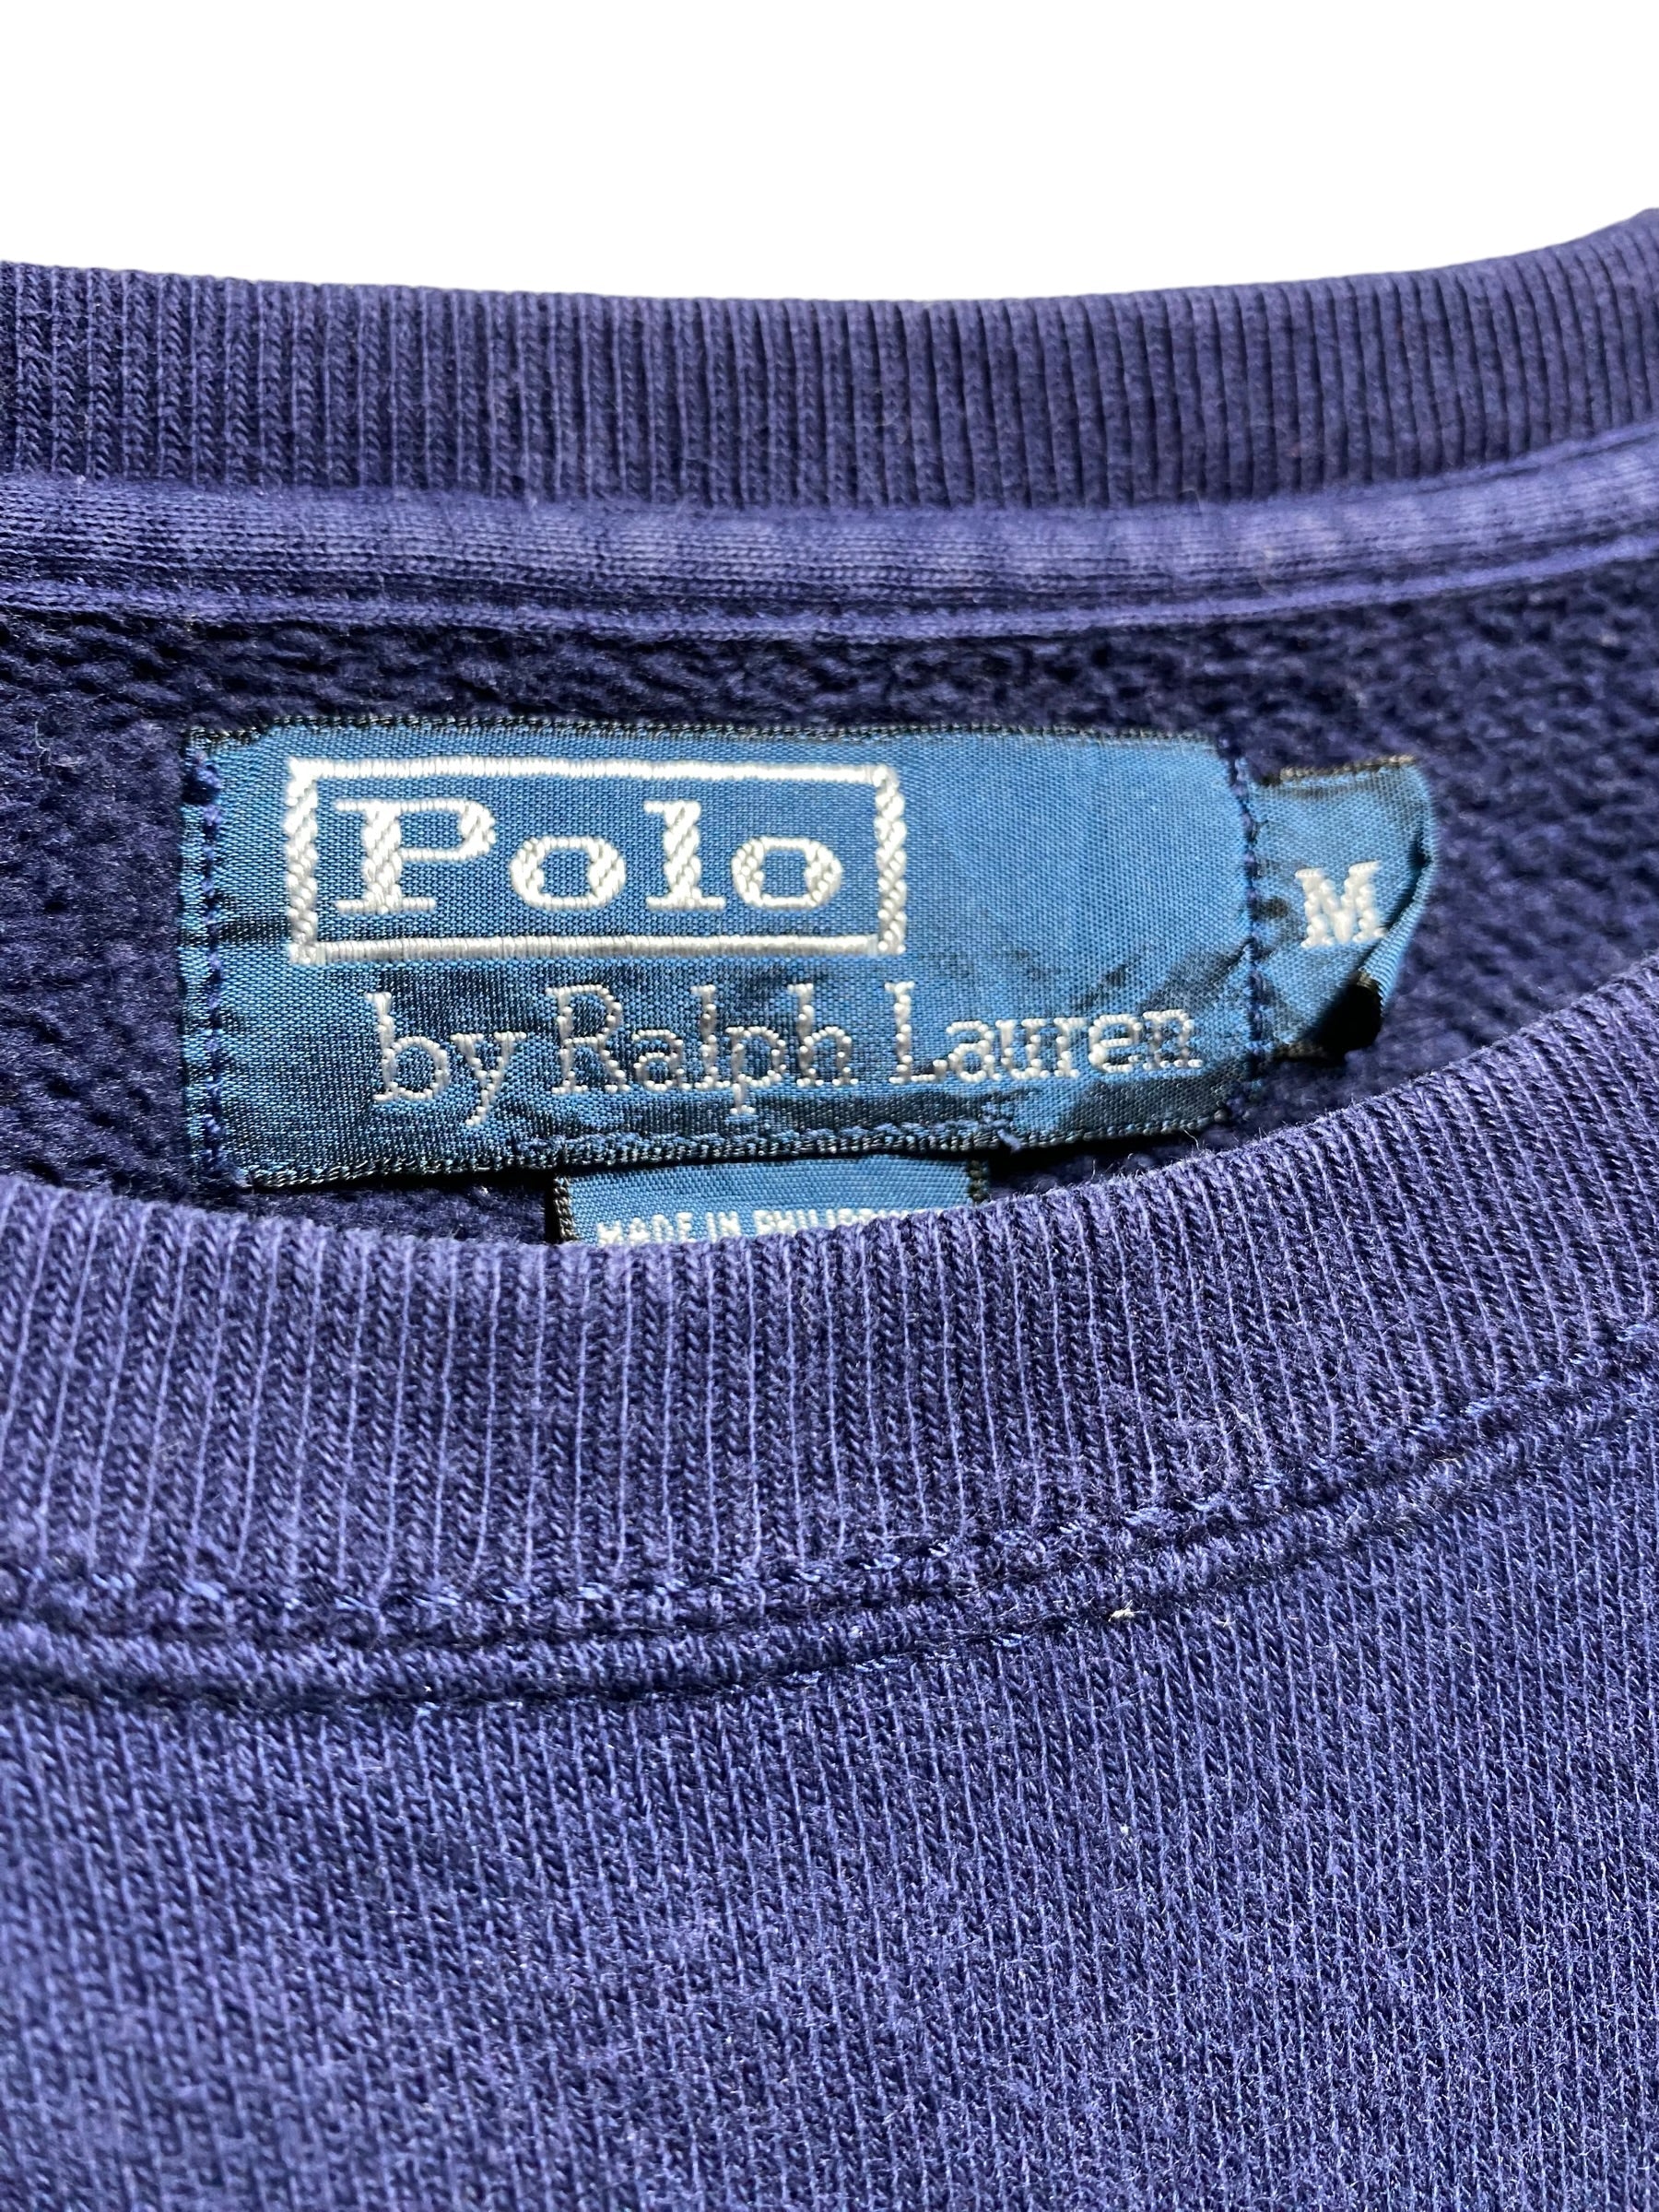 90年代 00年代 Polo Ralph Lauren ポロ ラルフローレン トレーナー 